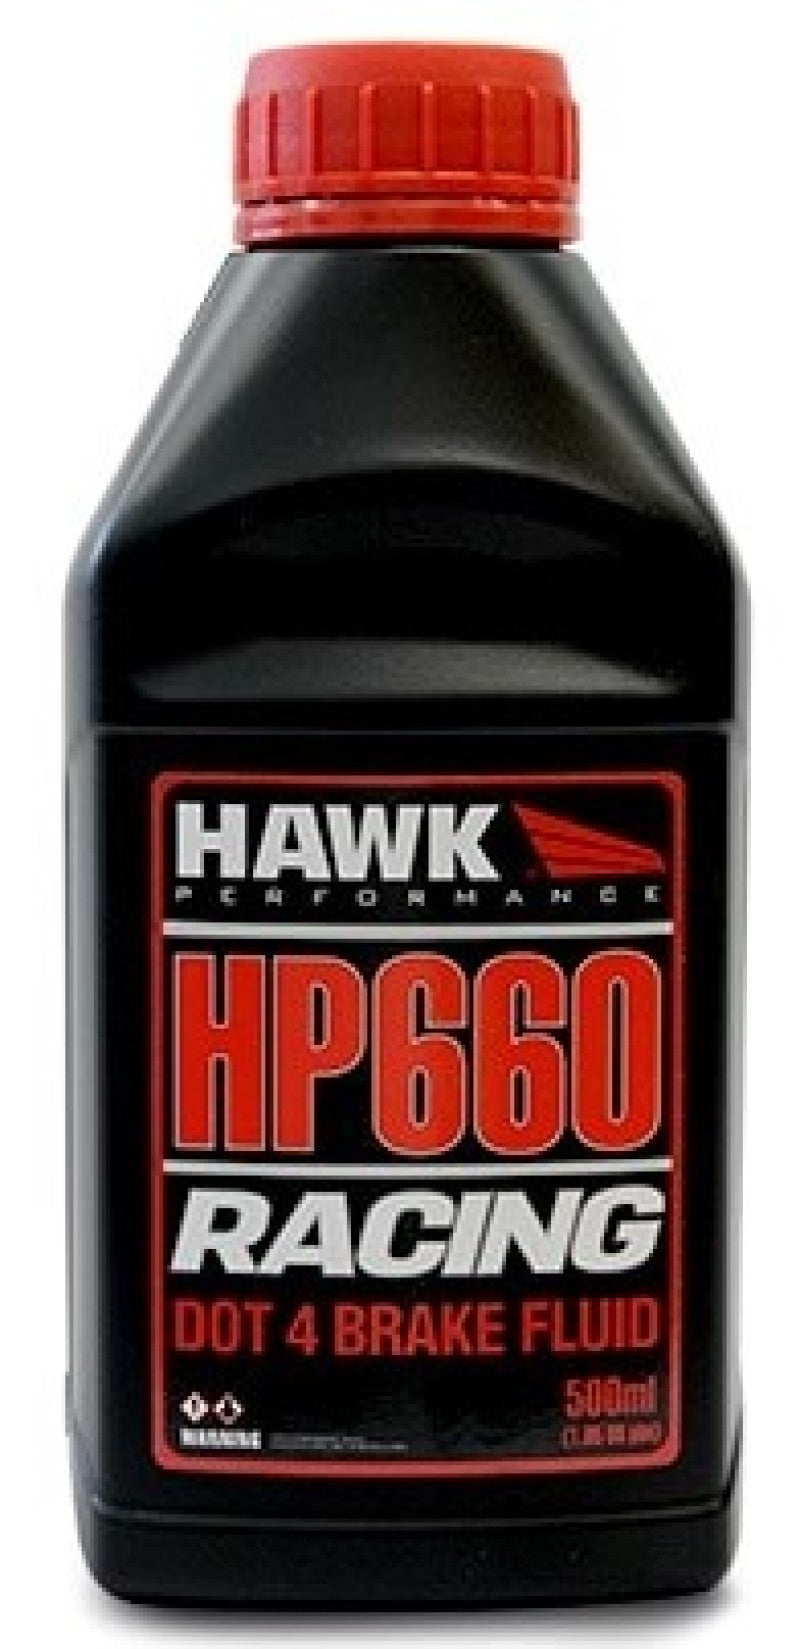 Hawk Performance Race DOT 4 Brake Fluid - 500ml Bottle.